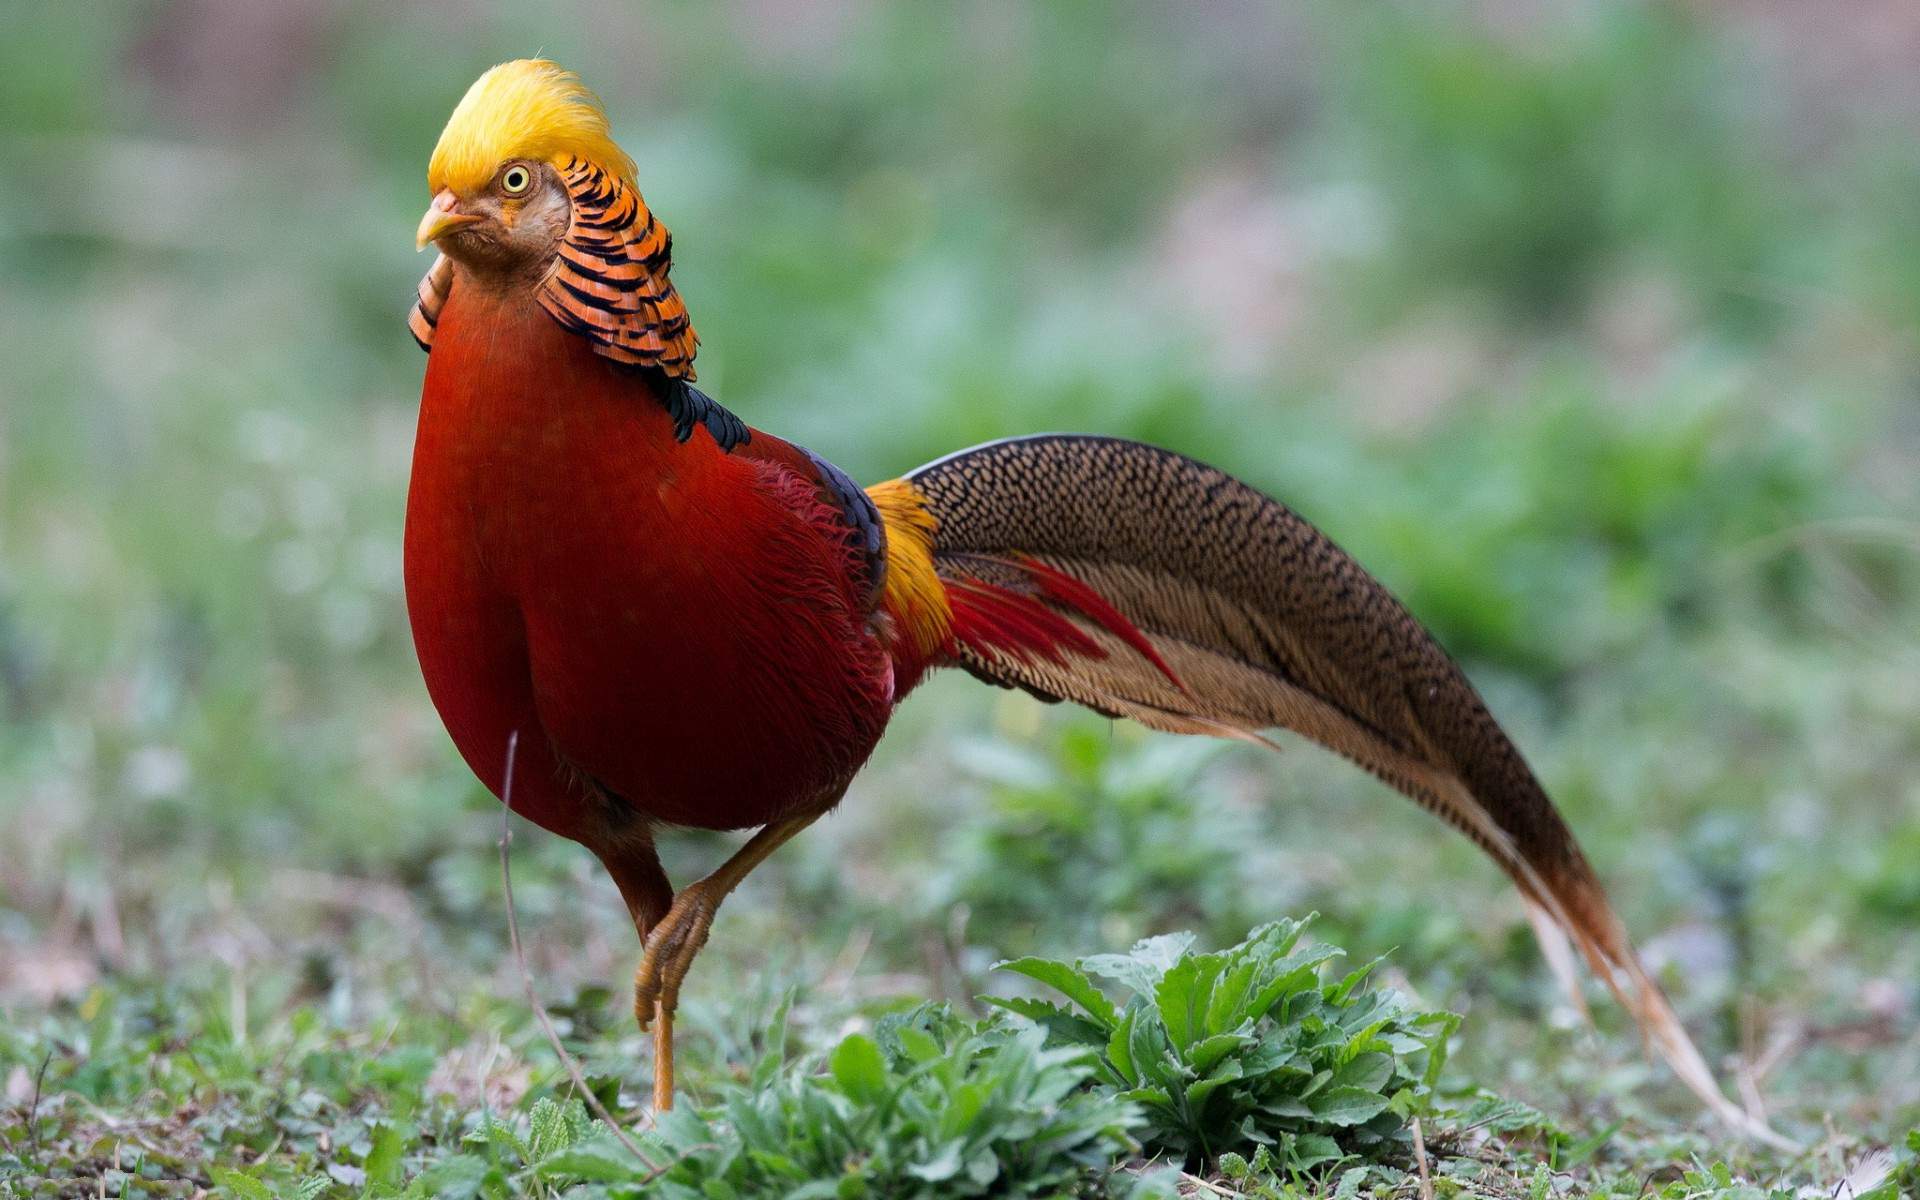 Golden Pheasant Bird Wallpaper HD For Desktop Of Red Bird